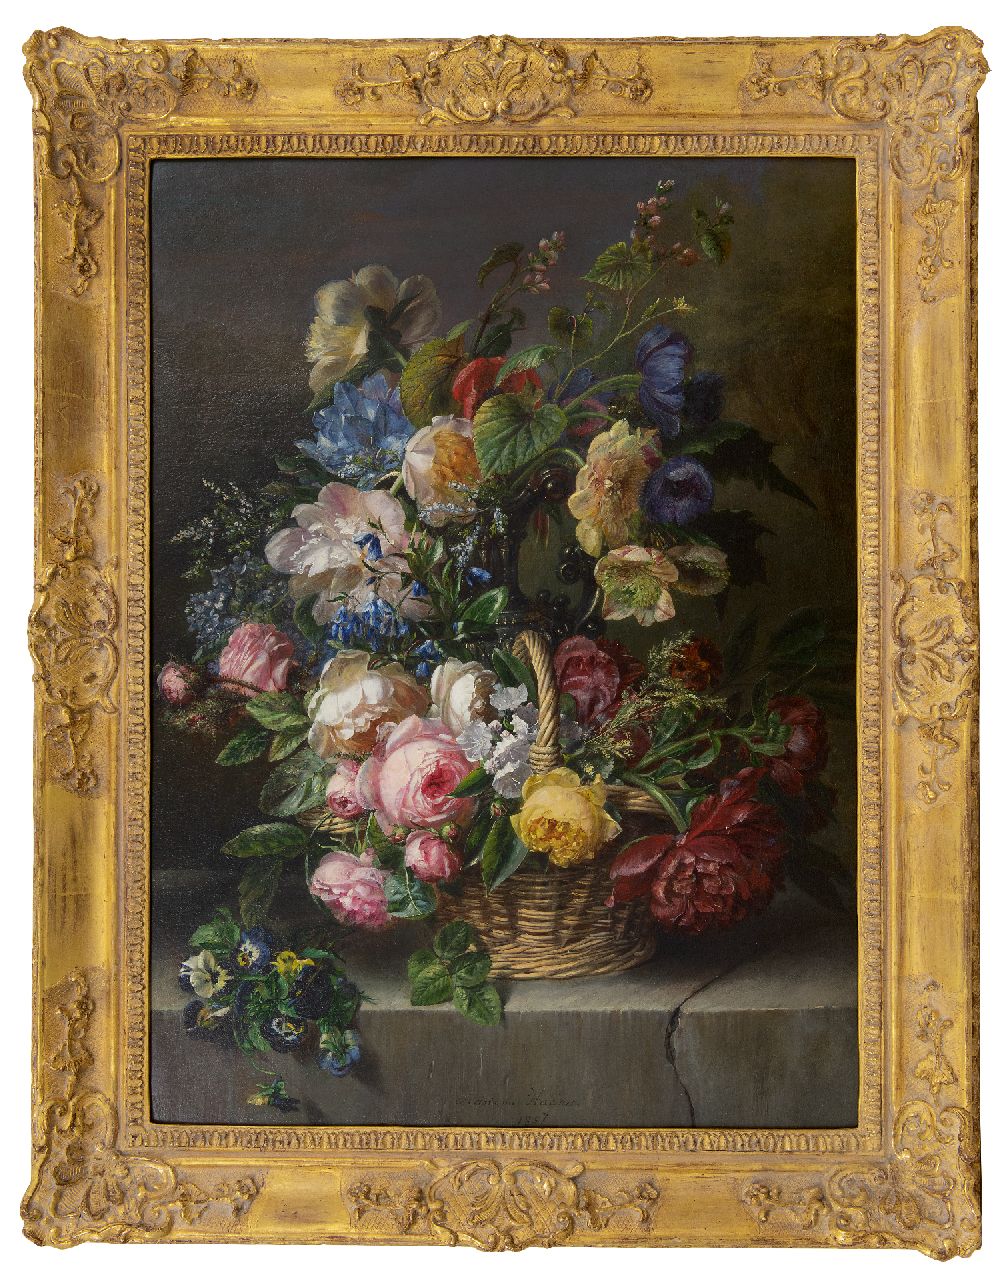 Haanen A.J.  | Adriana Johanna Haanen | Schilderijen te koop aangeboden | Weelderig bloemstilleven, olieverf op doek 73,5 x 53,7 cm, gesigneerd middenonder en gedateerd 1857